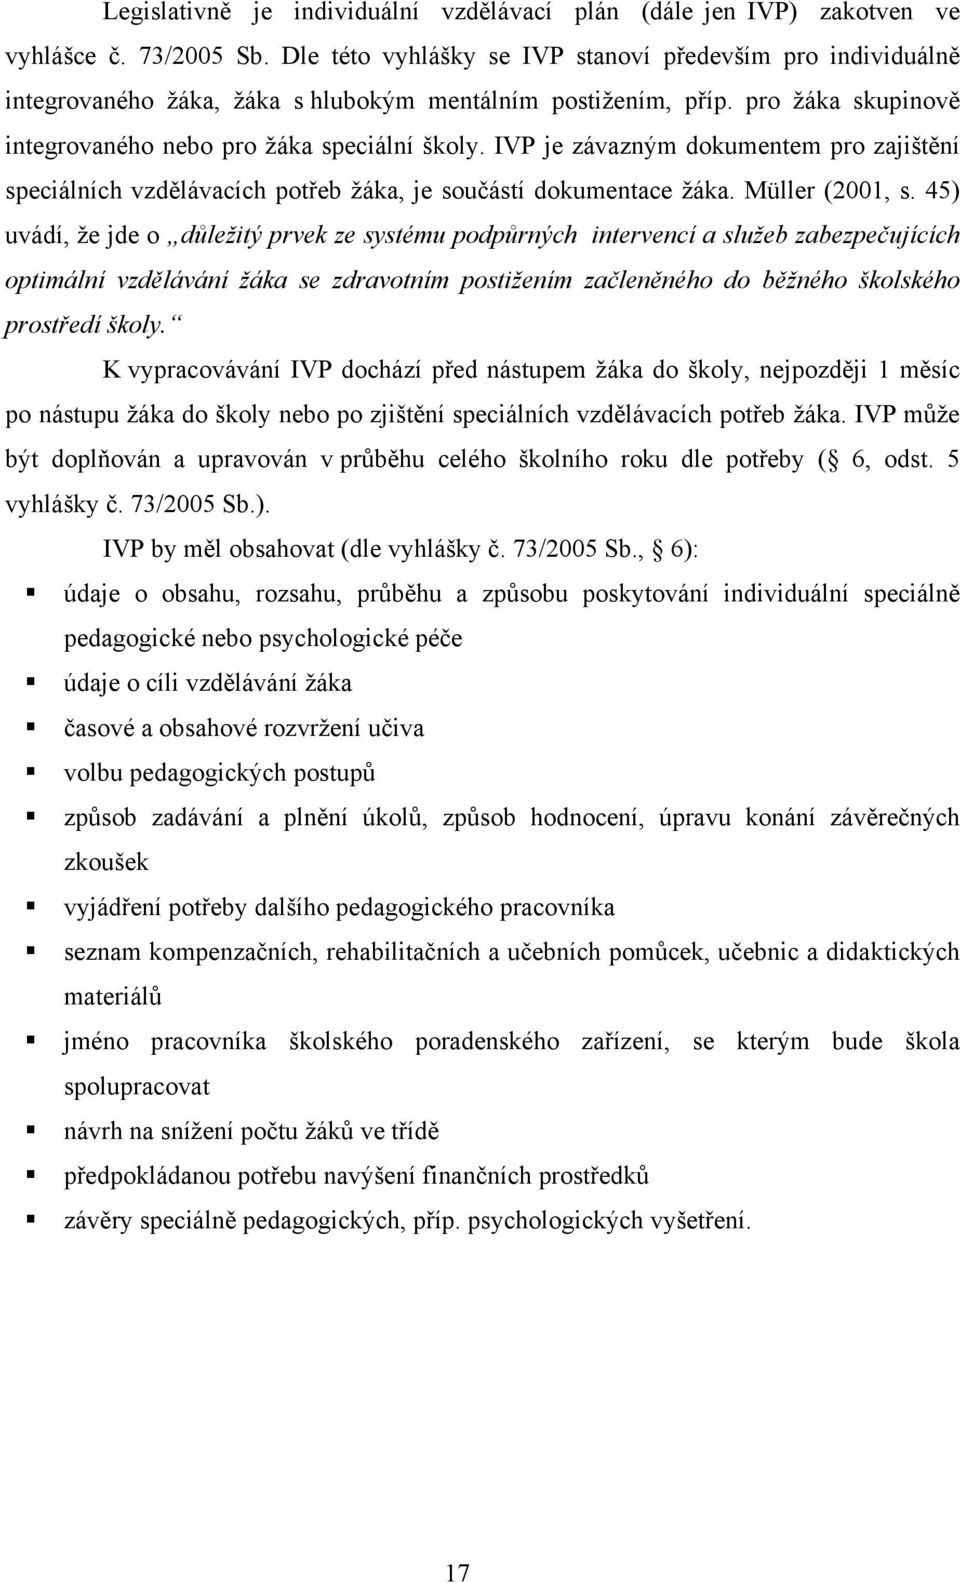 IVP je závazným dokumentem pro zajištění speciálních vzdělávacích potřeb žáka, je součástí dokumentace žáka. Müller (2001, s.